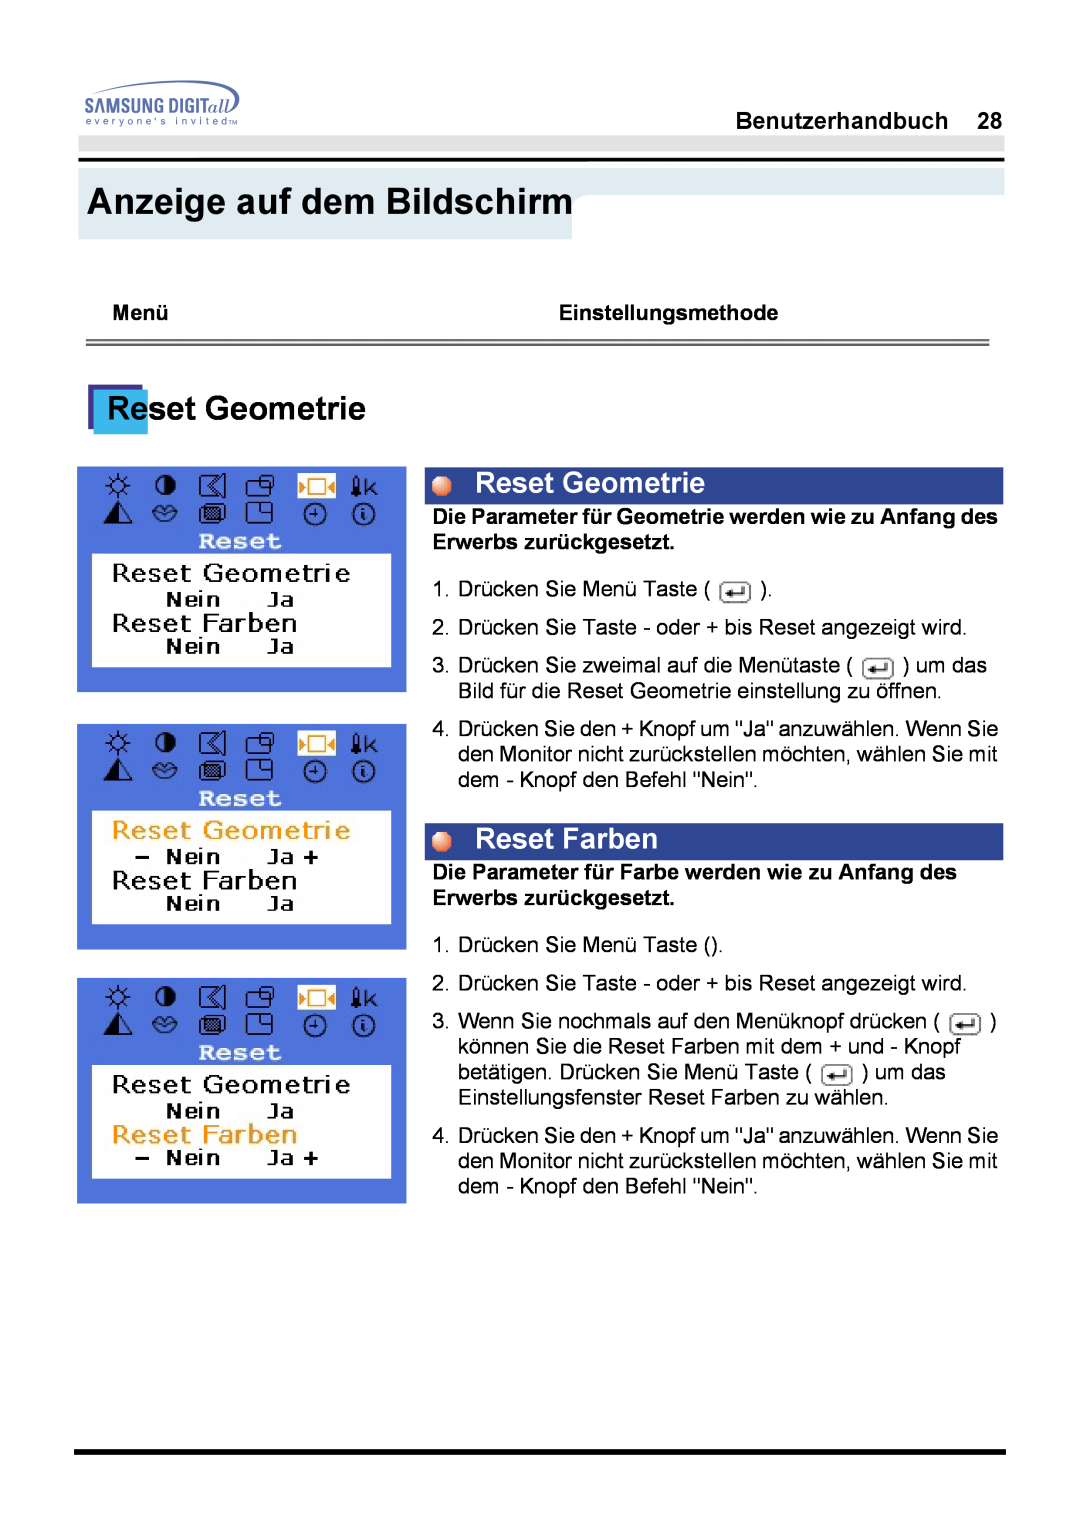 Samsung GH17LSSSJ/EDC, GH17HSSN/EDC, GH17LSSN Reset Geometrie, Reset Farben, Anzeige auf dem Bildschirm, Benutzerhandbuch 